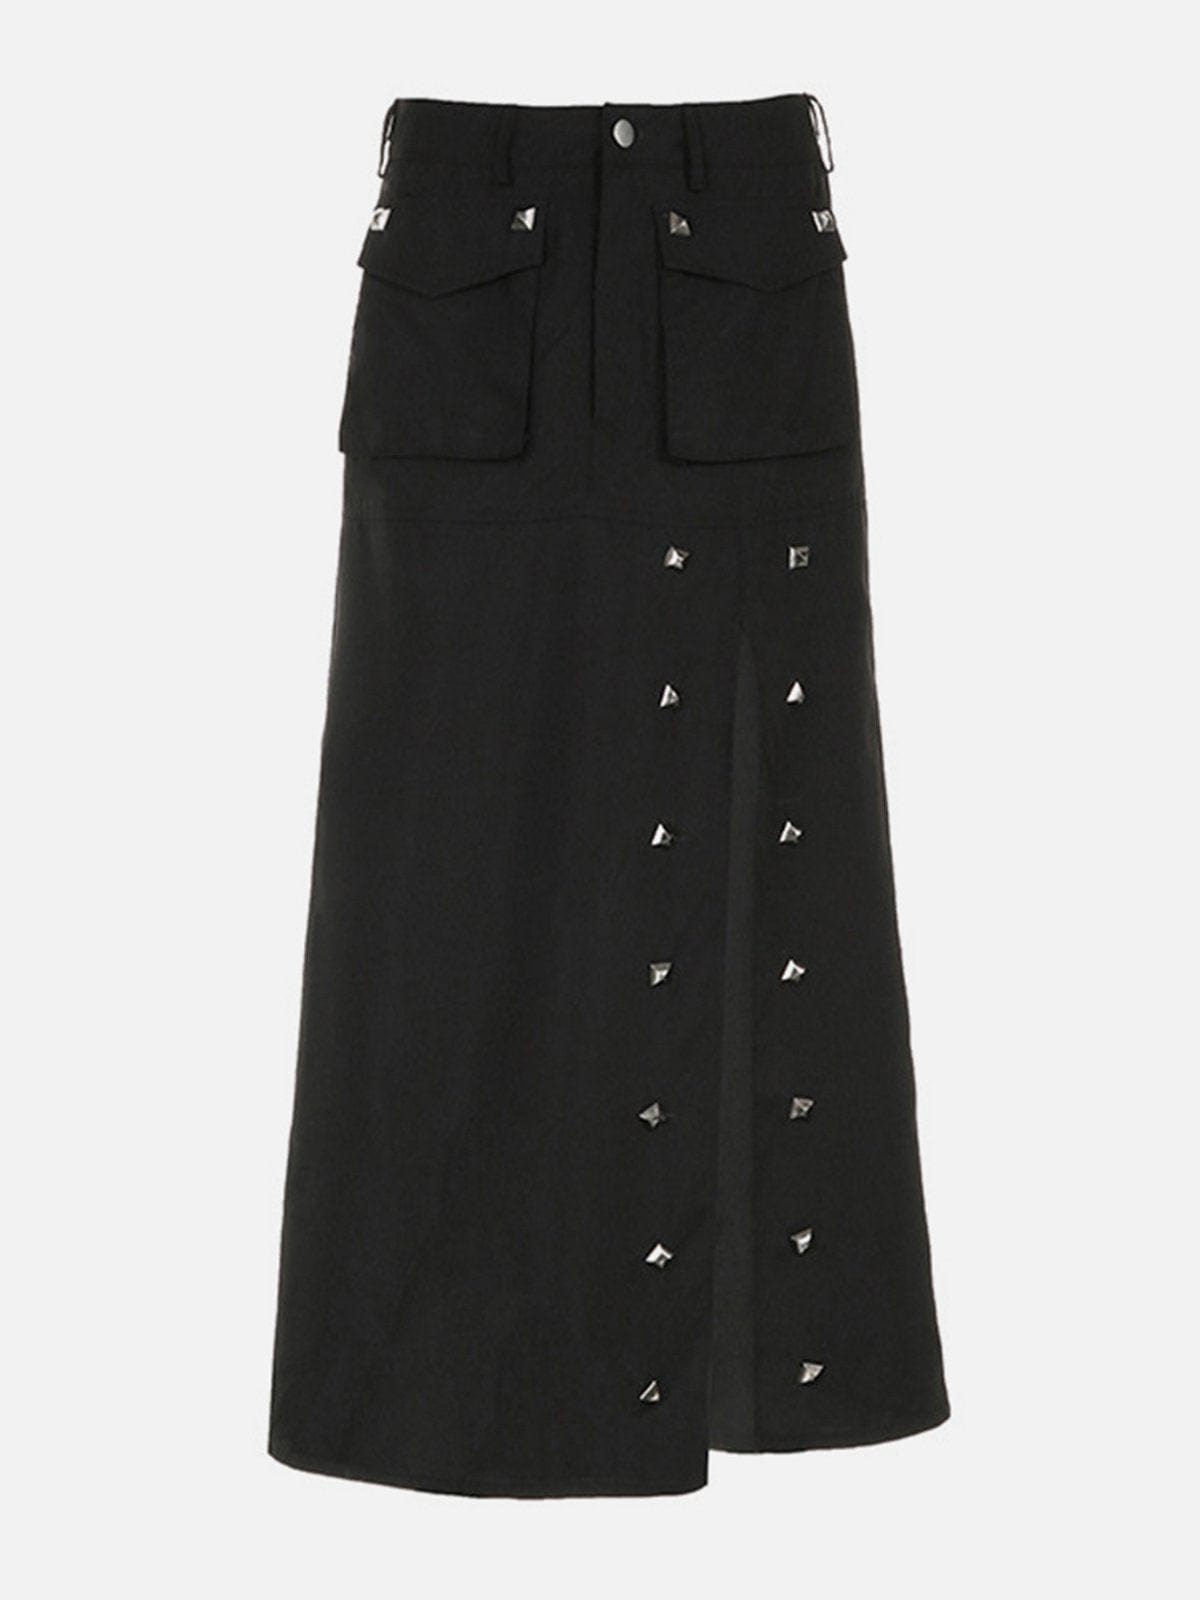 NEV Studded Slit Long Skirt